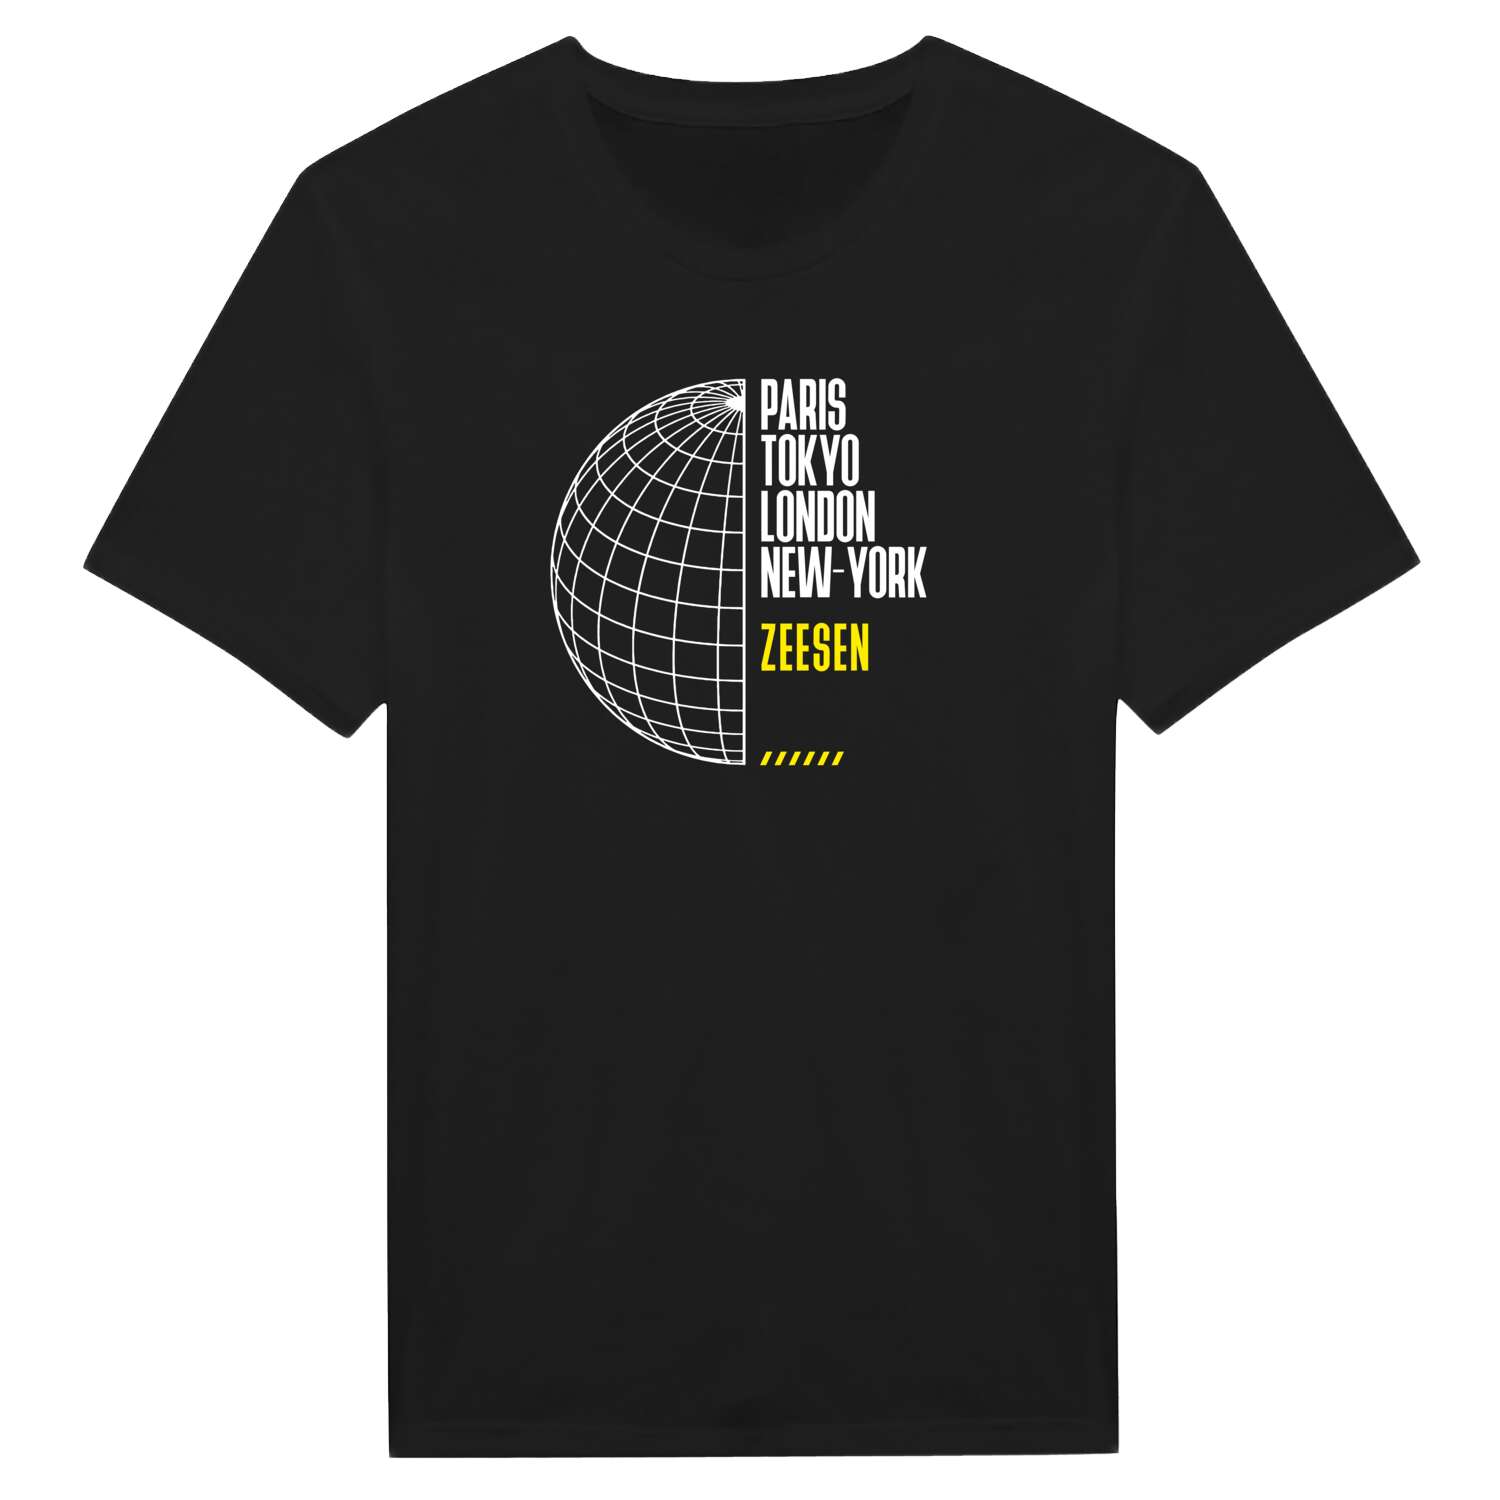 Zeesen T-Shirt »Paris Tokyo London«